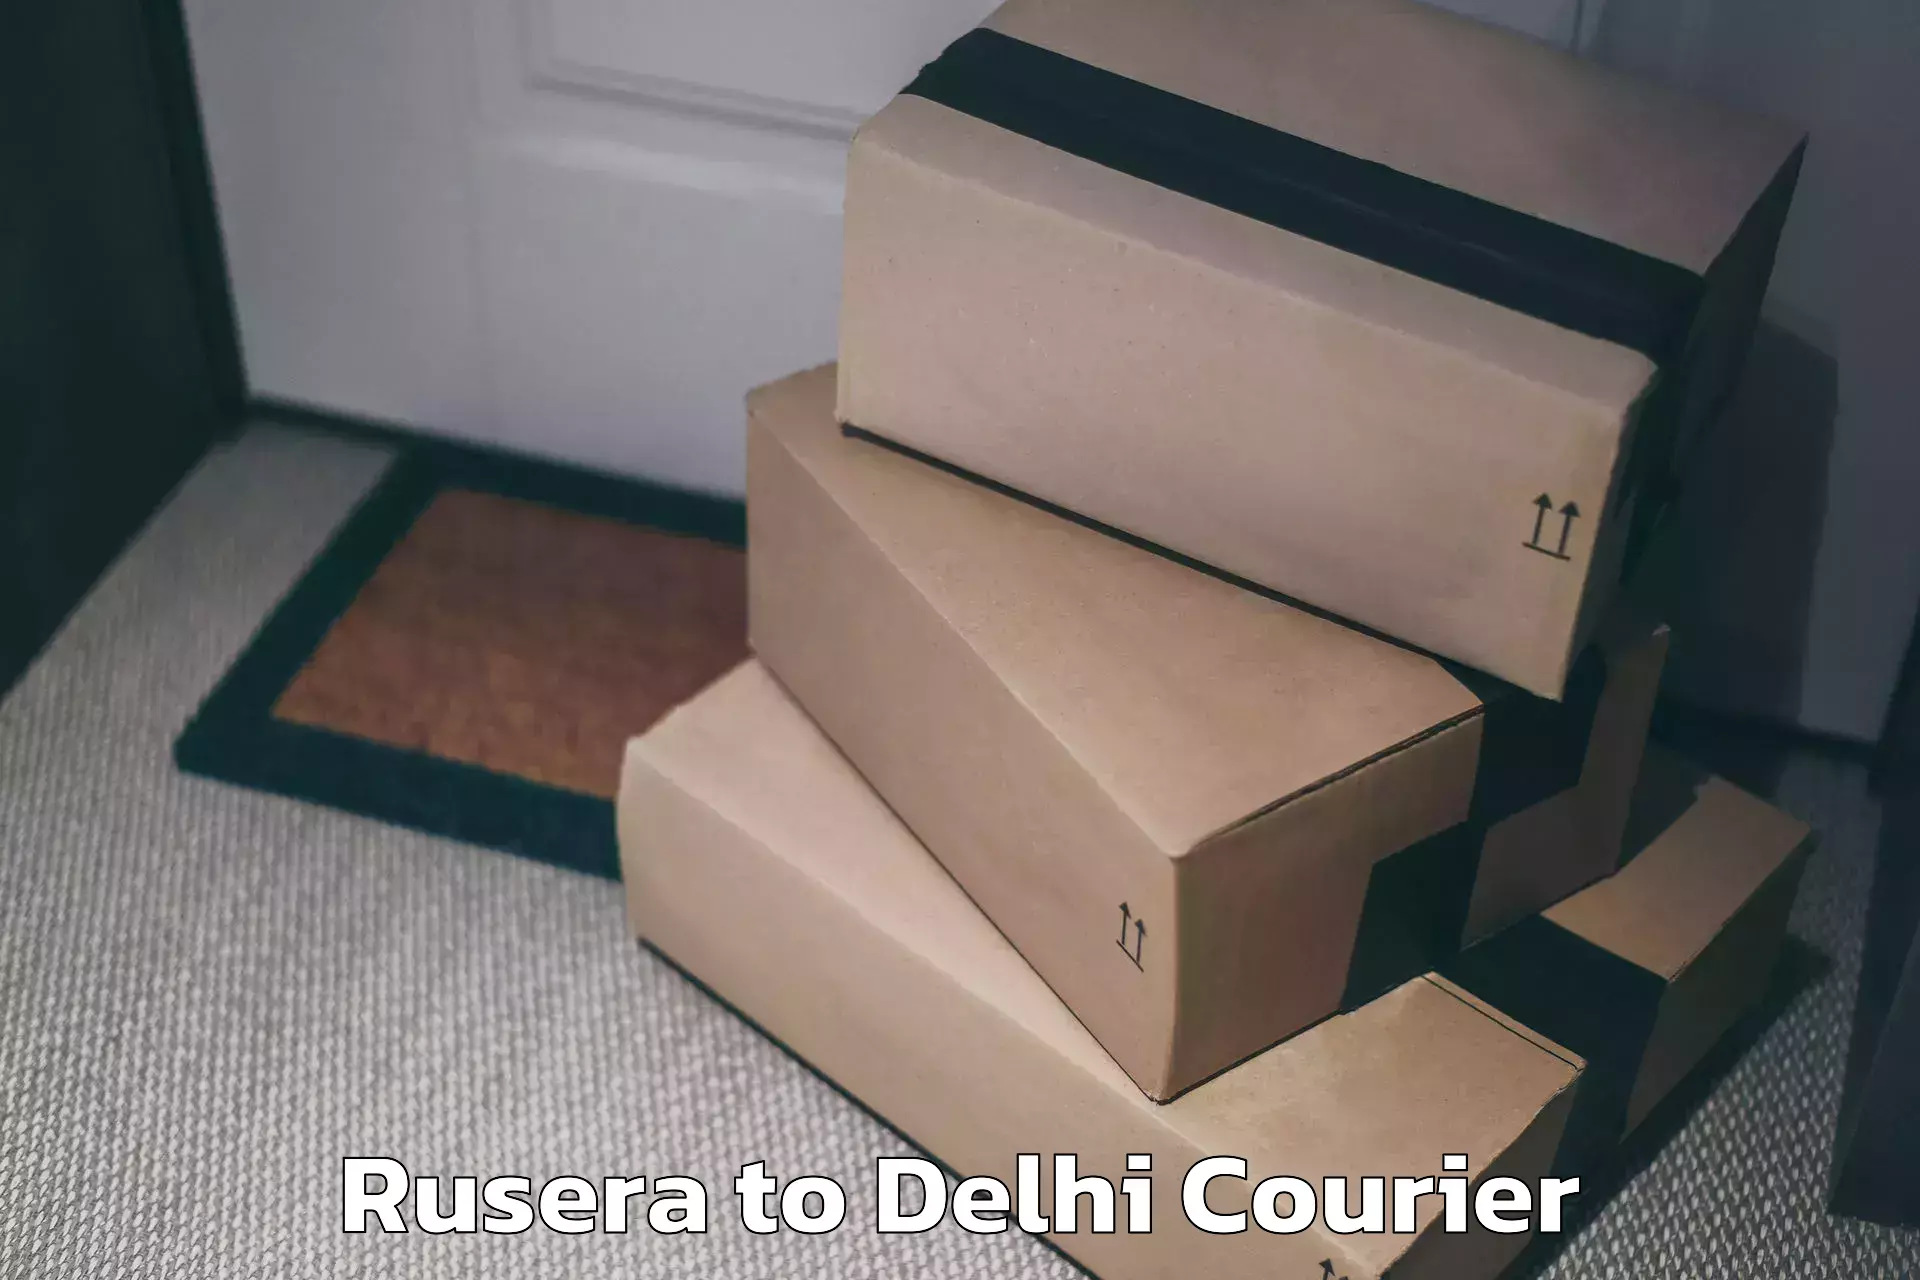 Luggage transport service Rusera to Delhi